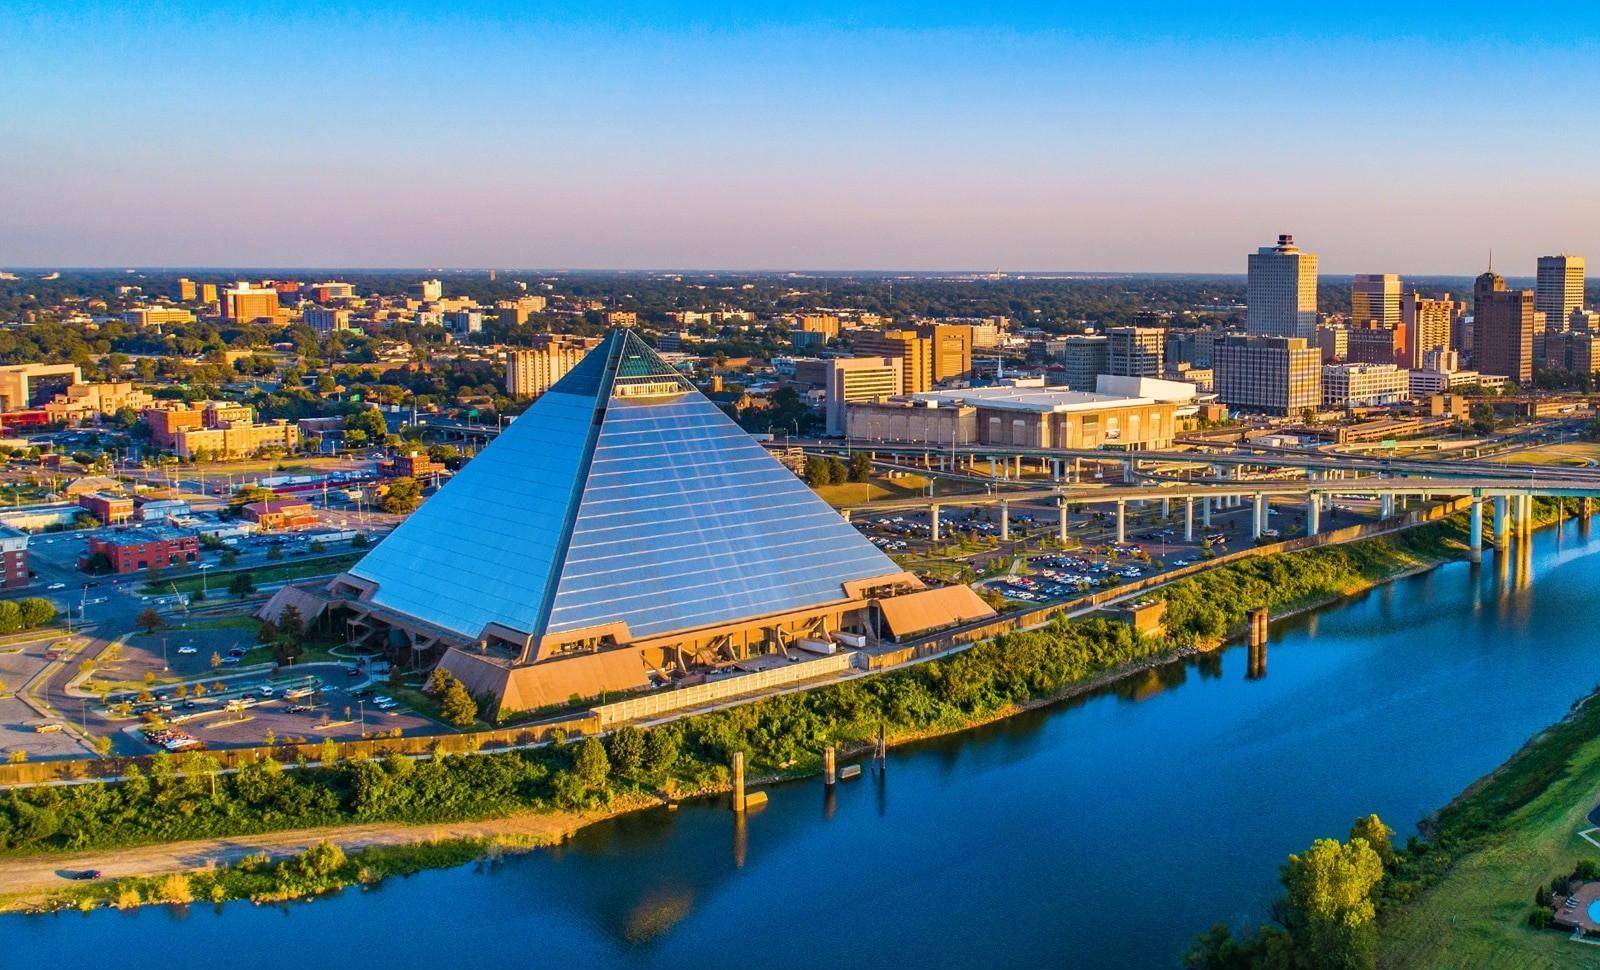 古埃及的首都图片